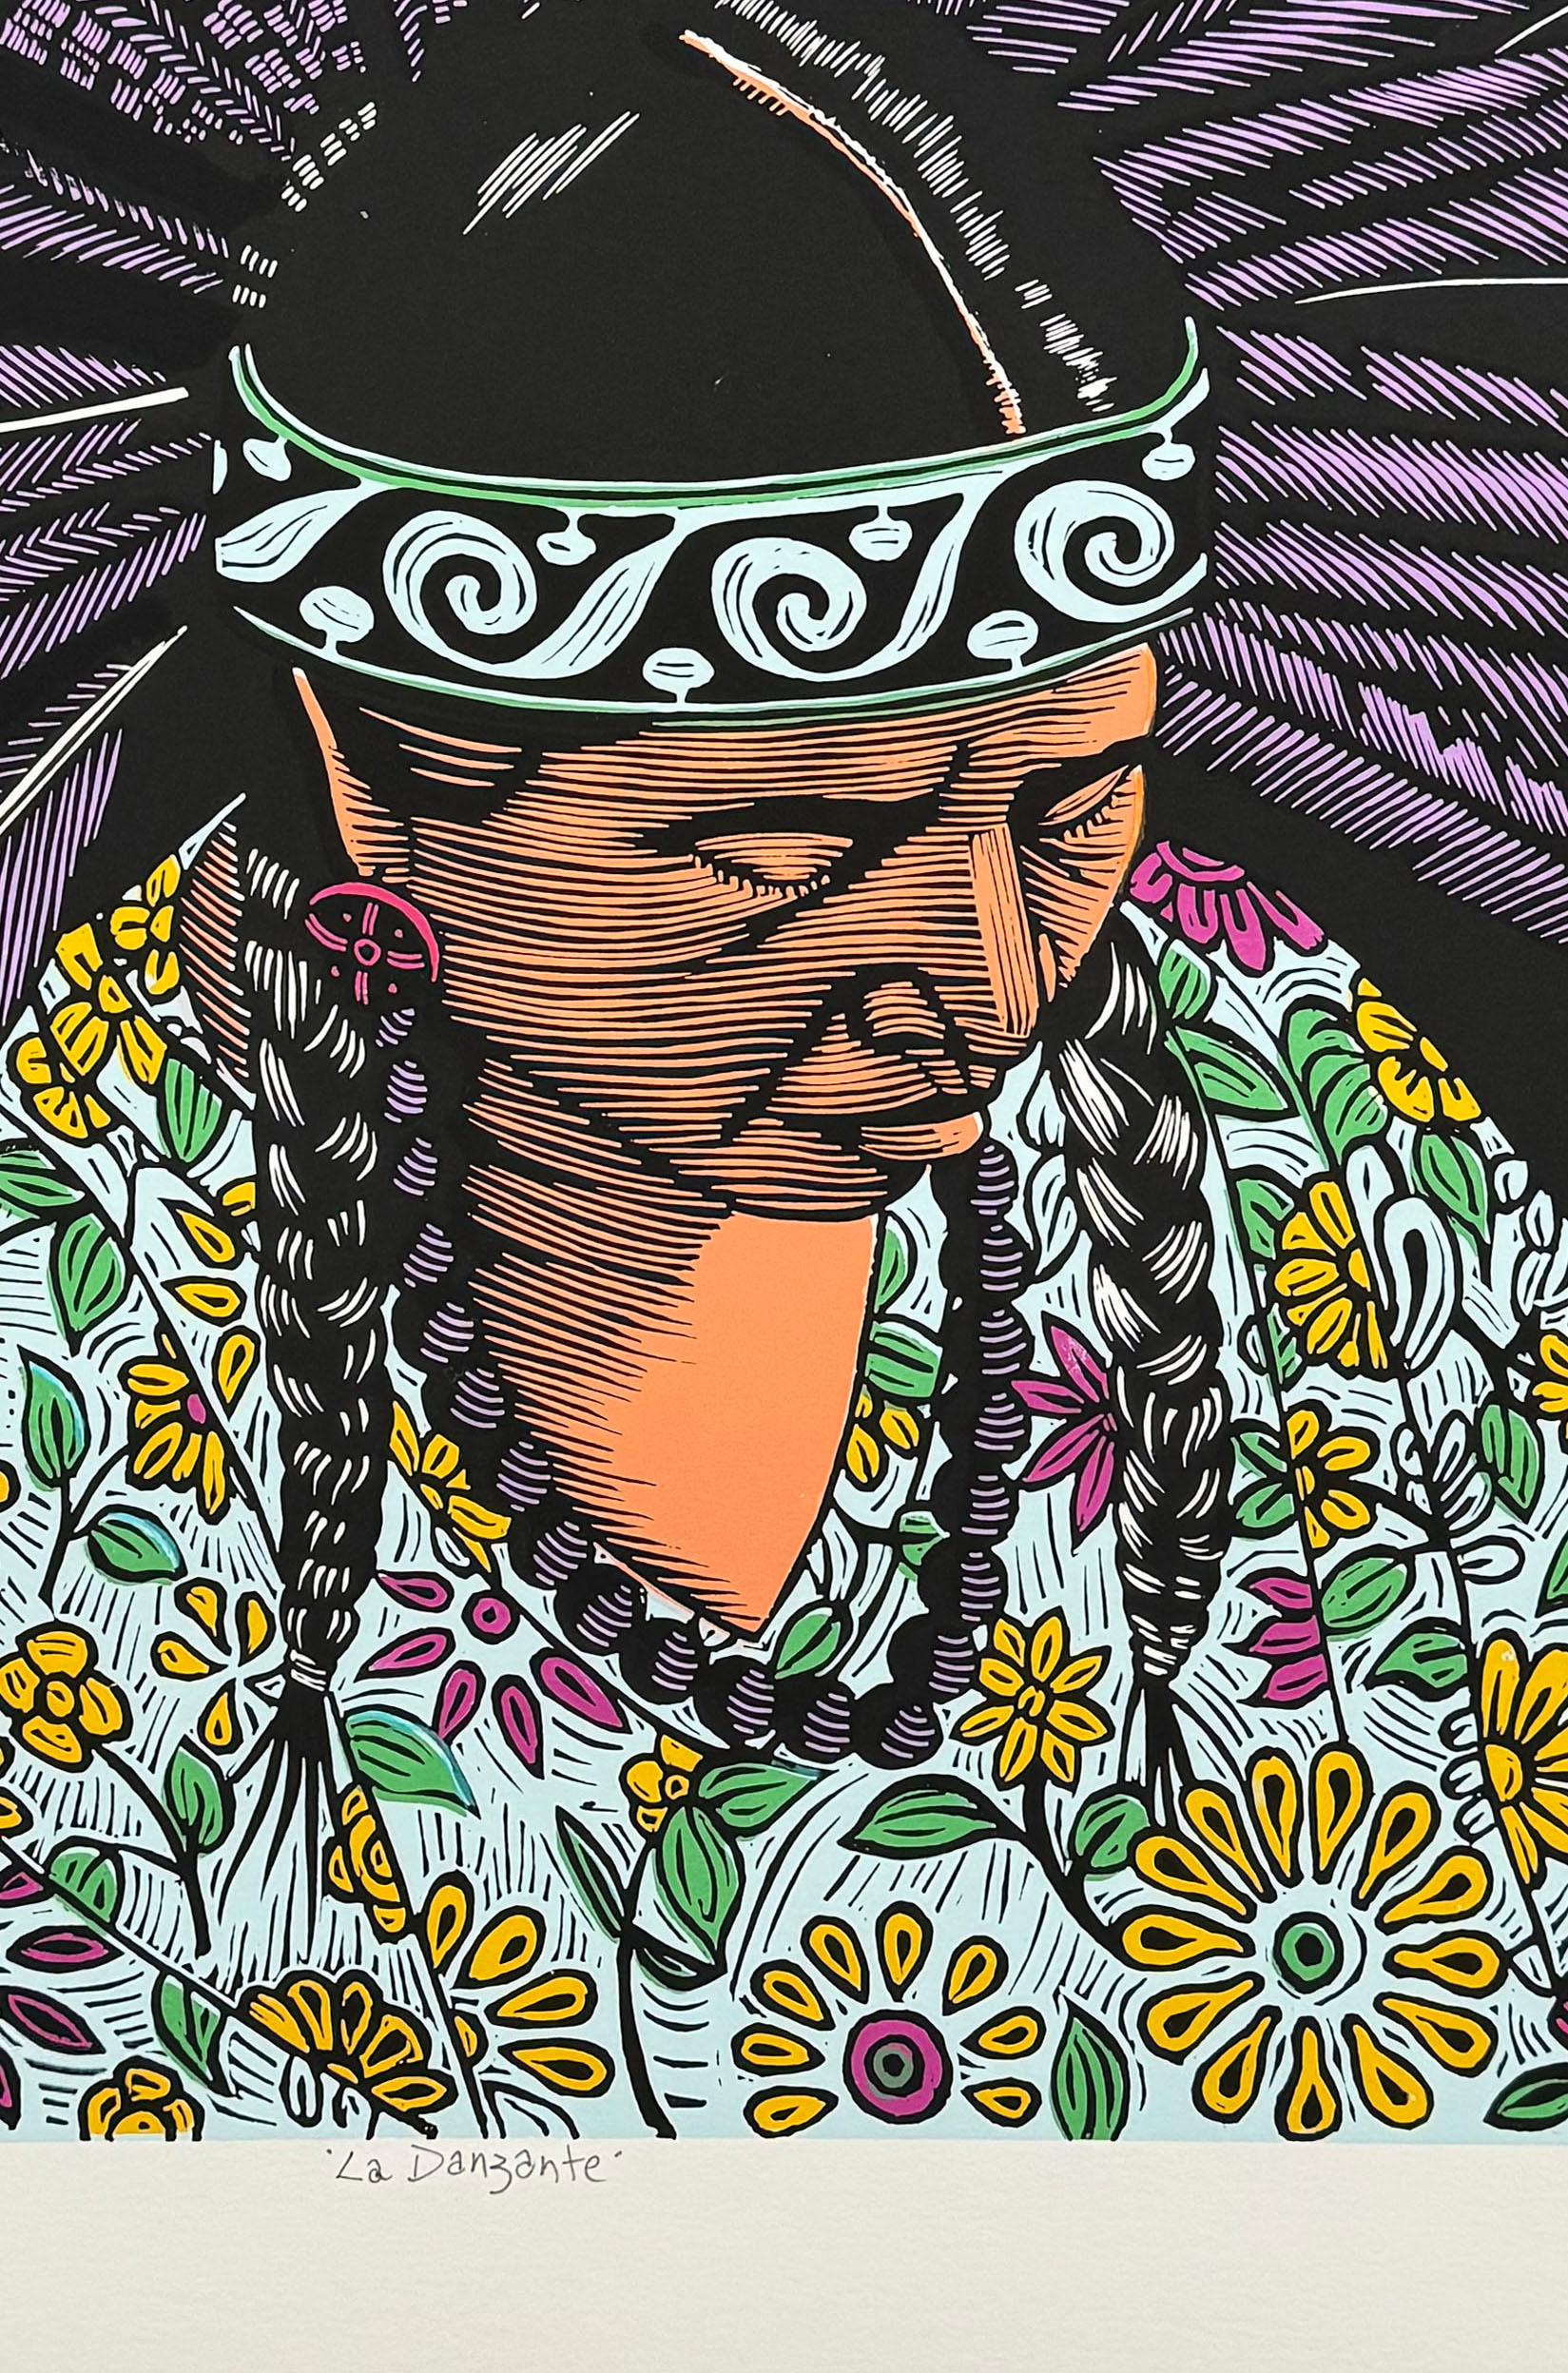 Medium: Siebdruck
Jahr: 2019
Bildgröße: 24 x 24 Zoll
Auflagenhöhe: 10

Bild einer amerikanischen Ureinwohnerin in traditionellem Gewand und mit zeremoniellem Tanz.

Als Kulturaktivist, Künstler und Grafiker hat Juan Fuentes seine Karriere dem Ziel